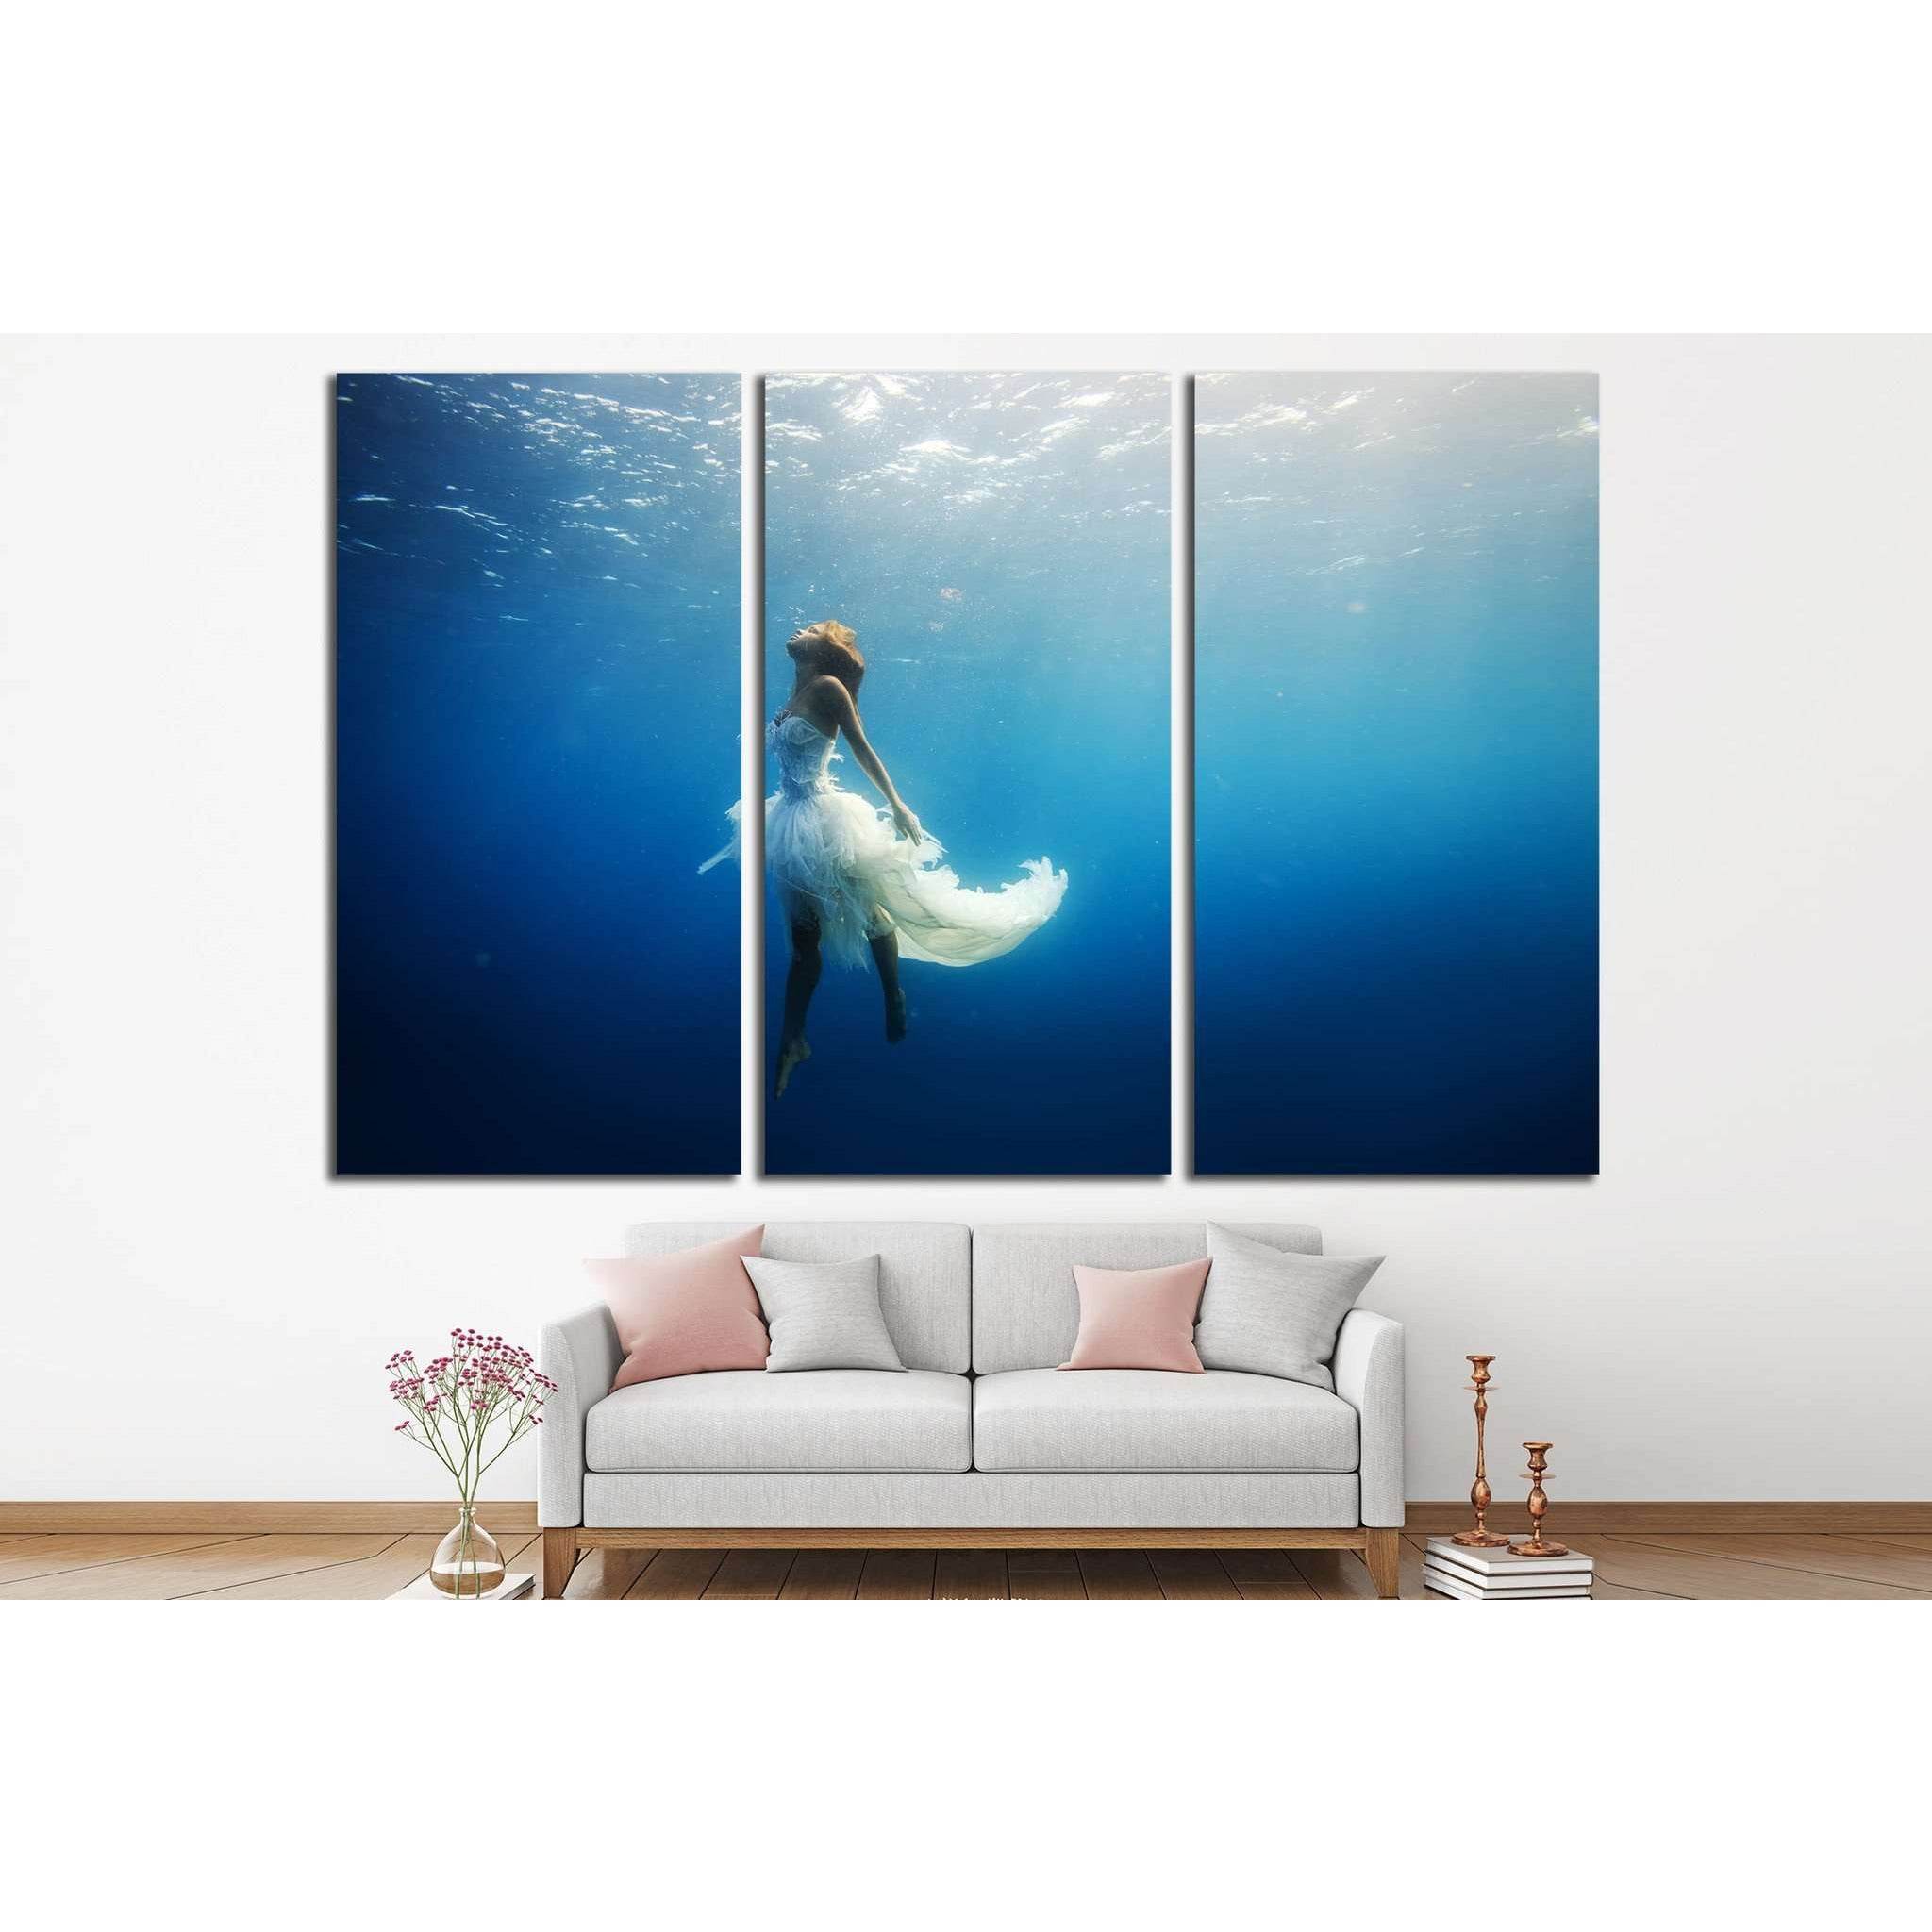 Dancing Underwater №505 Ready to Hang - Zellart Canvas Prints